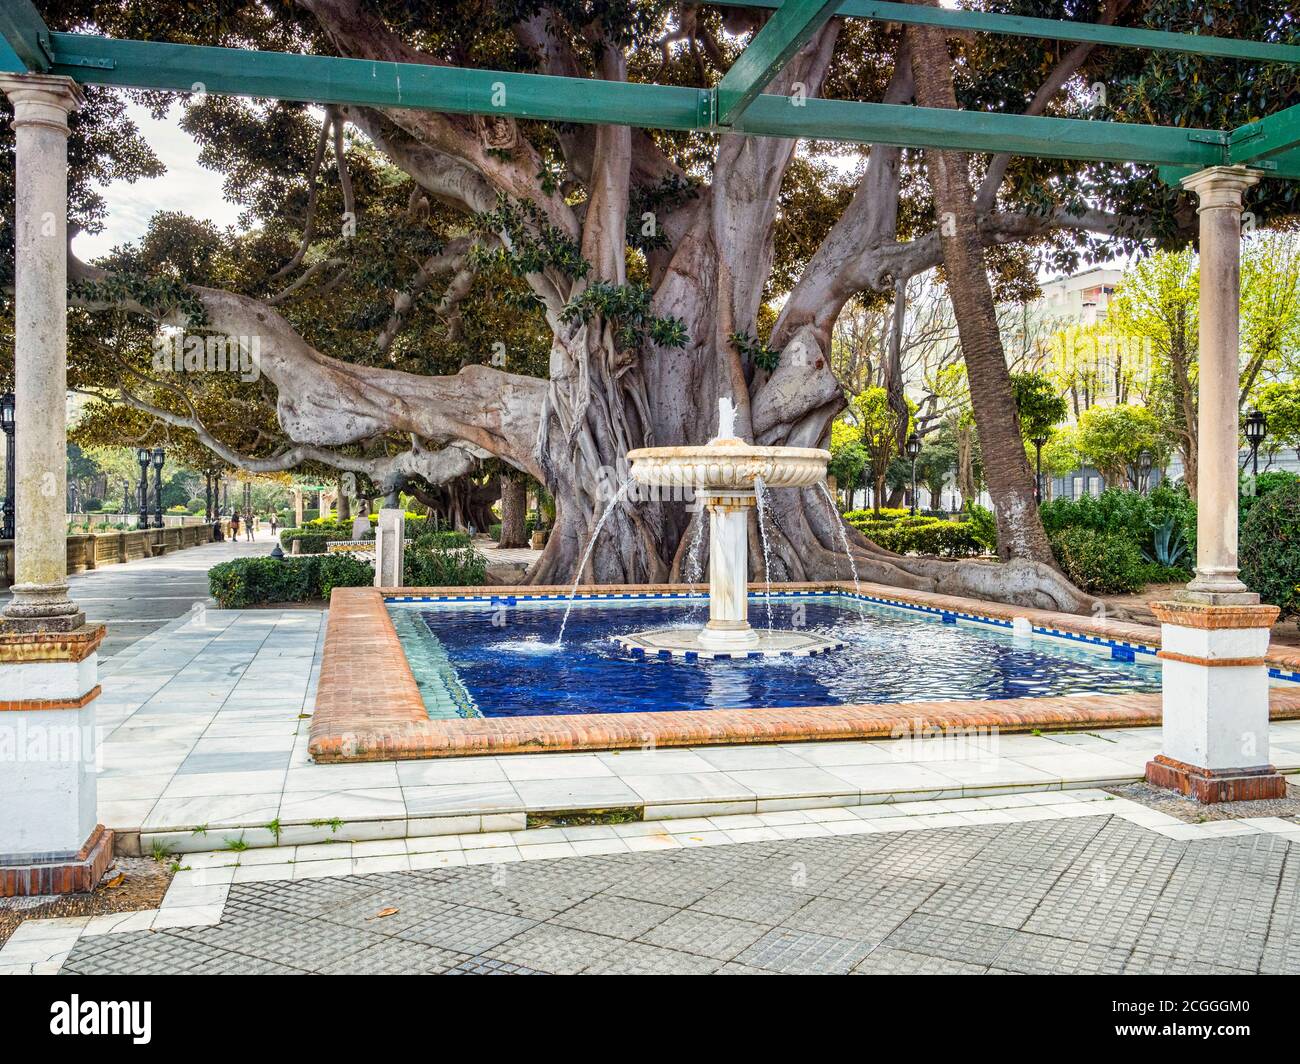 12 mars 2020: Cadix, Espagne - Fontaine dans les jardins Alameda Apodaca Cadix, Espagne. L'arbre géant est Ficus Elastica et a été planté vers 1900. Banque D'Images